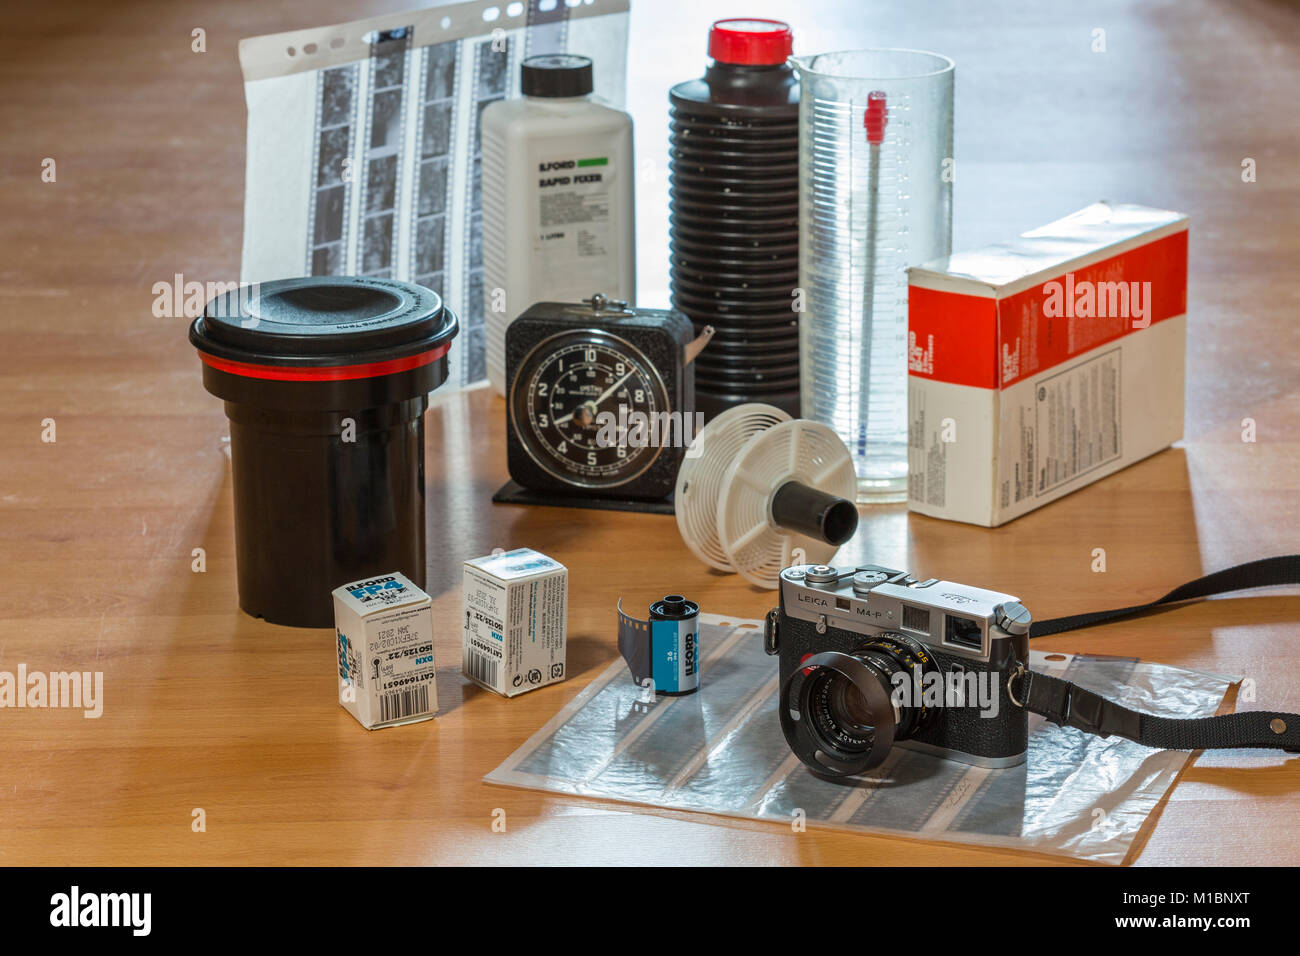 La fotografía analógica. Leica cámara de cine, películas de 35mm y el desarrollo de equipo. Foto de stock